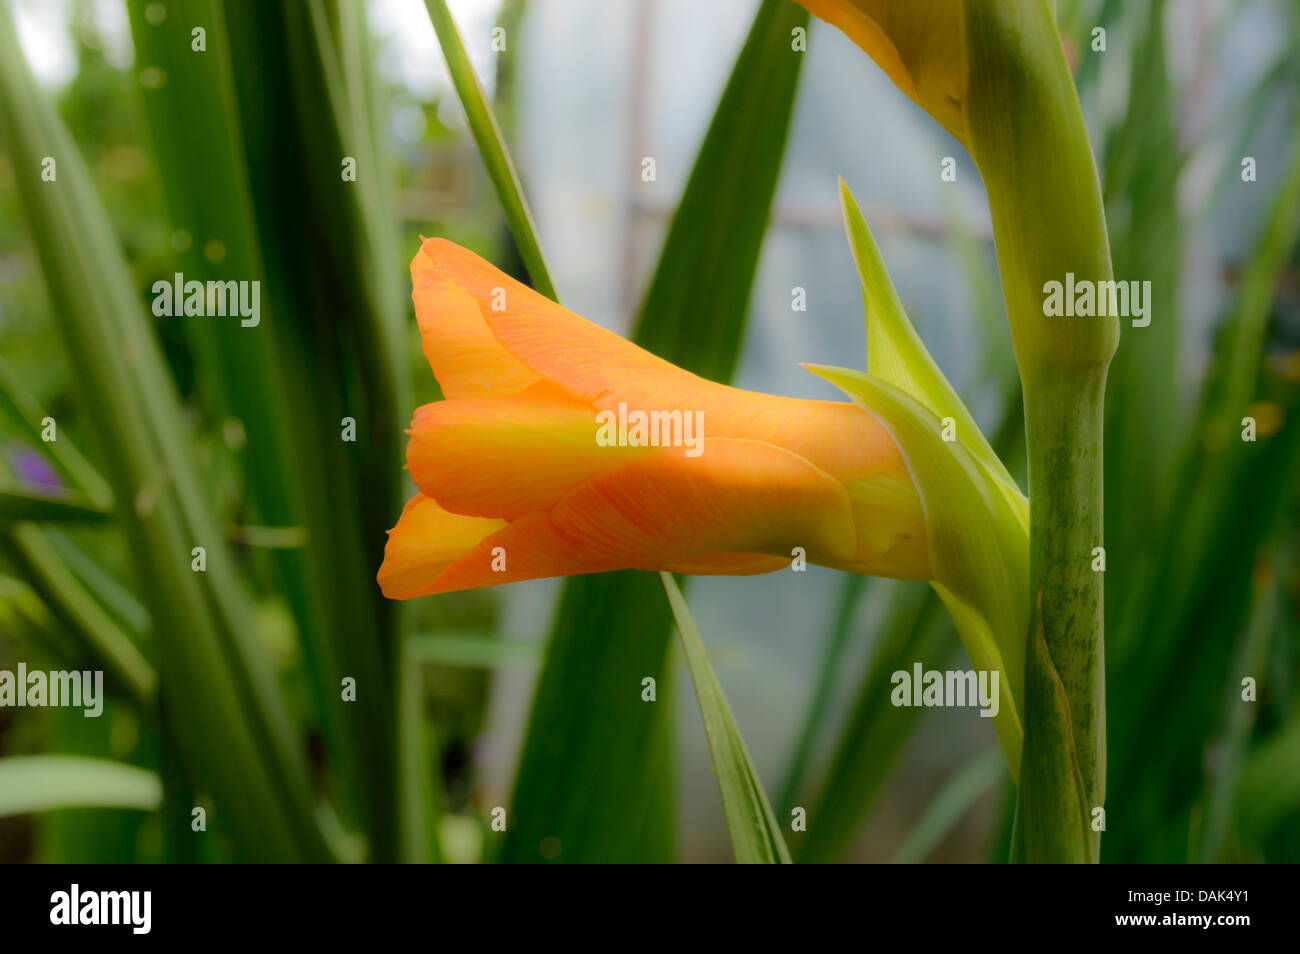 orange gladioli in the garden Stock Photo